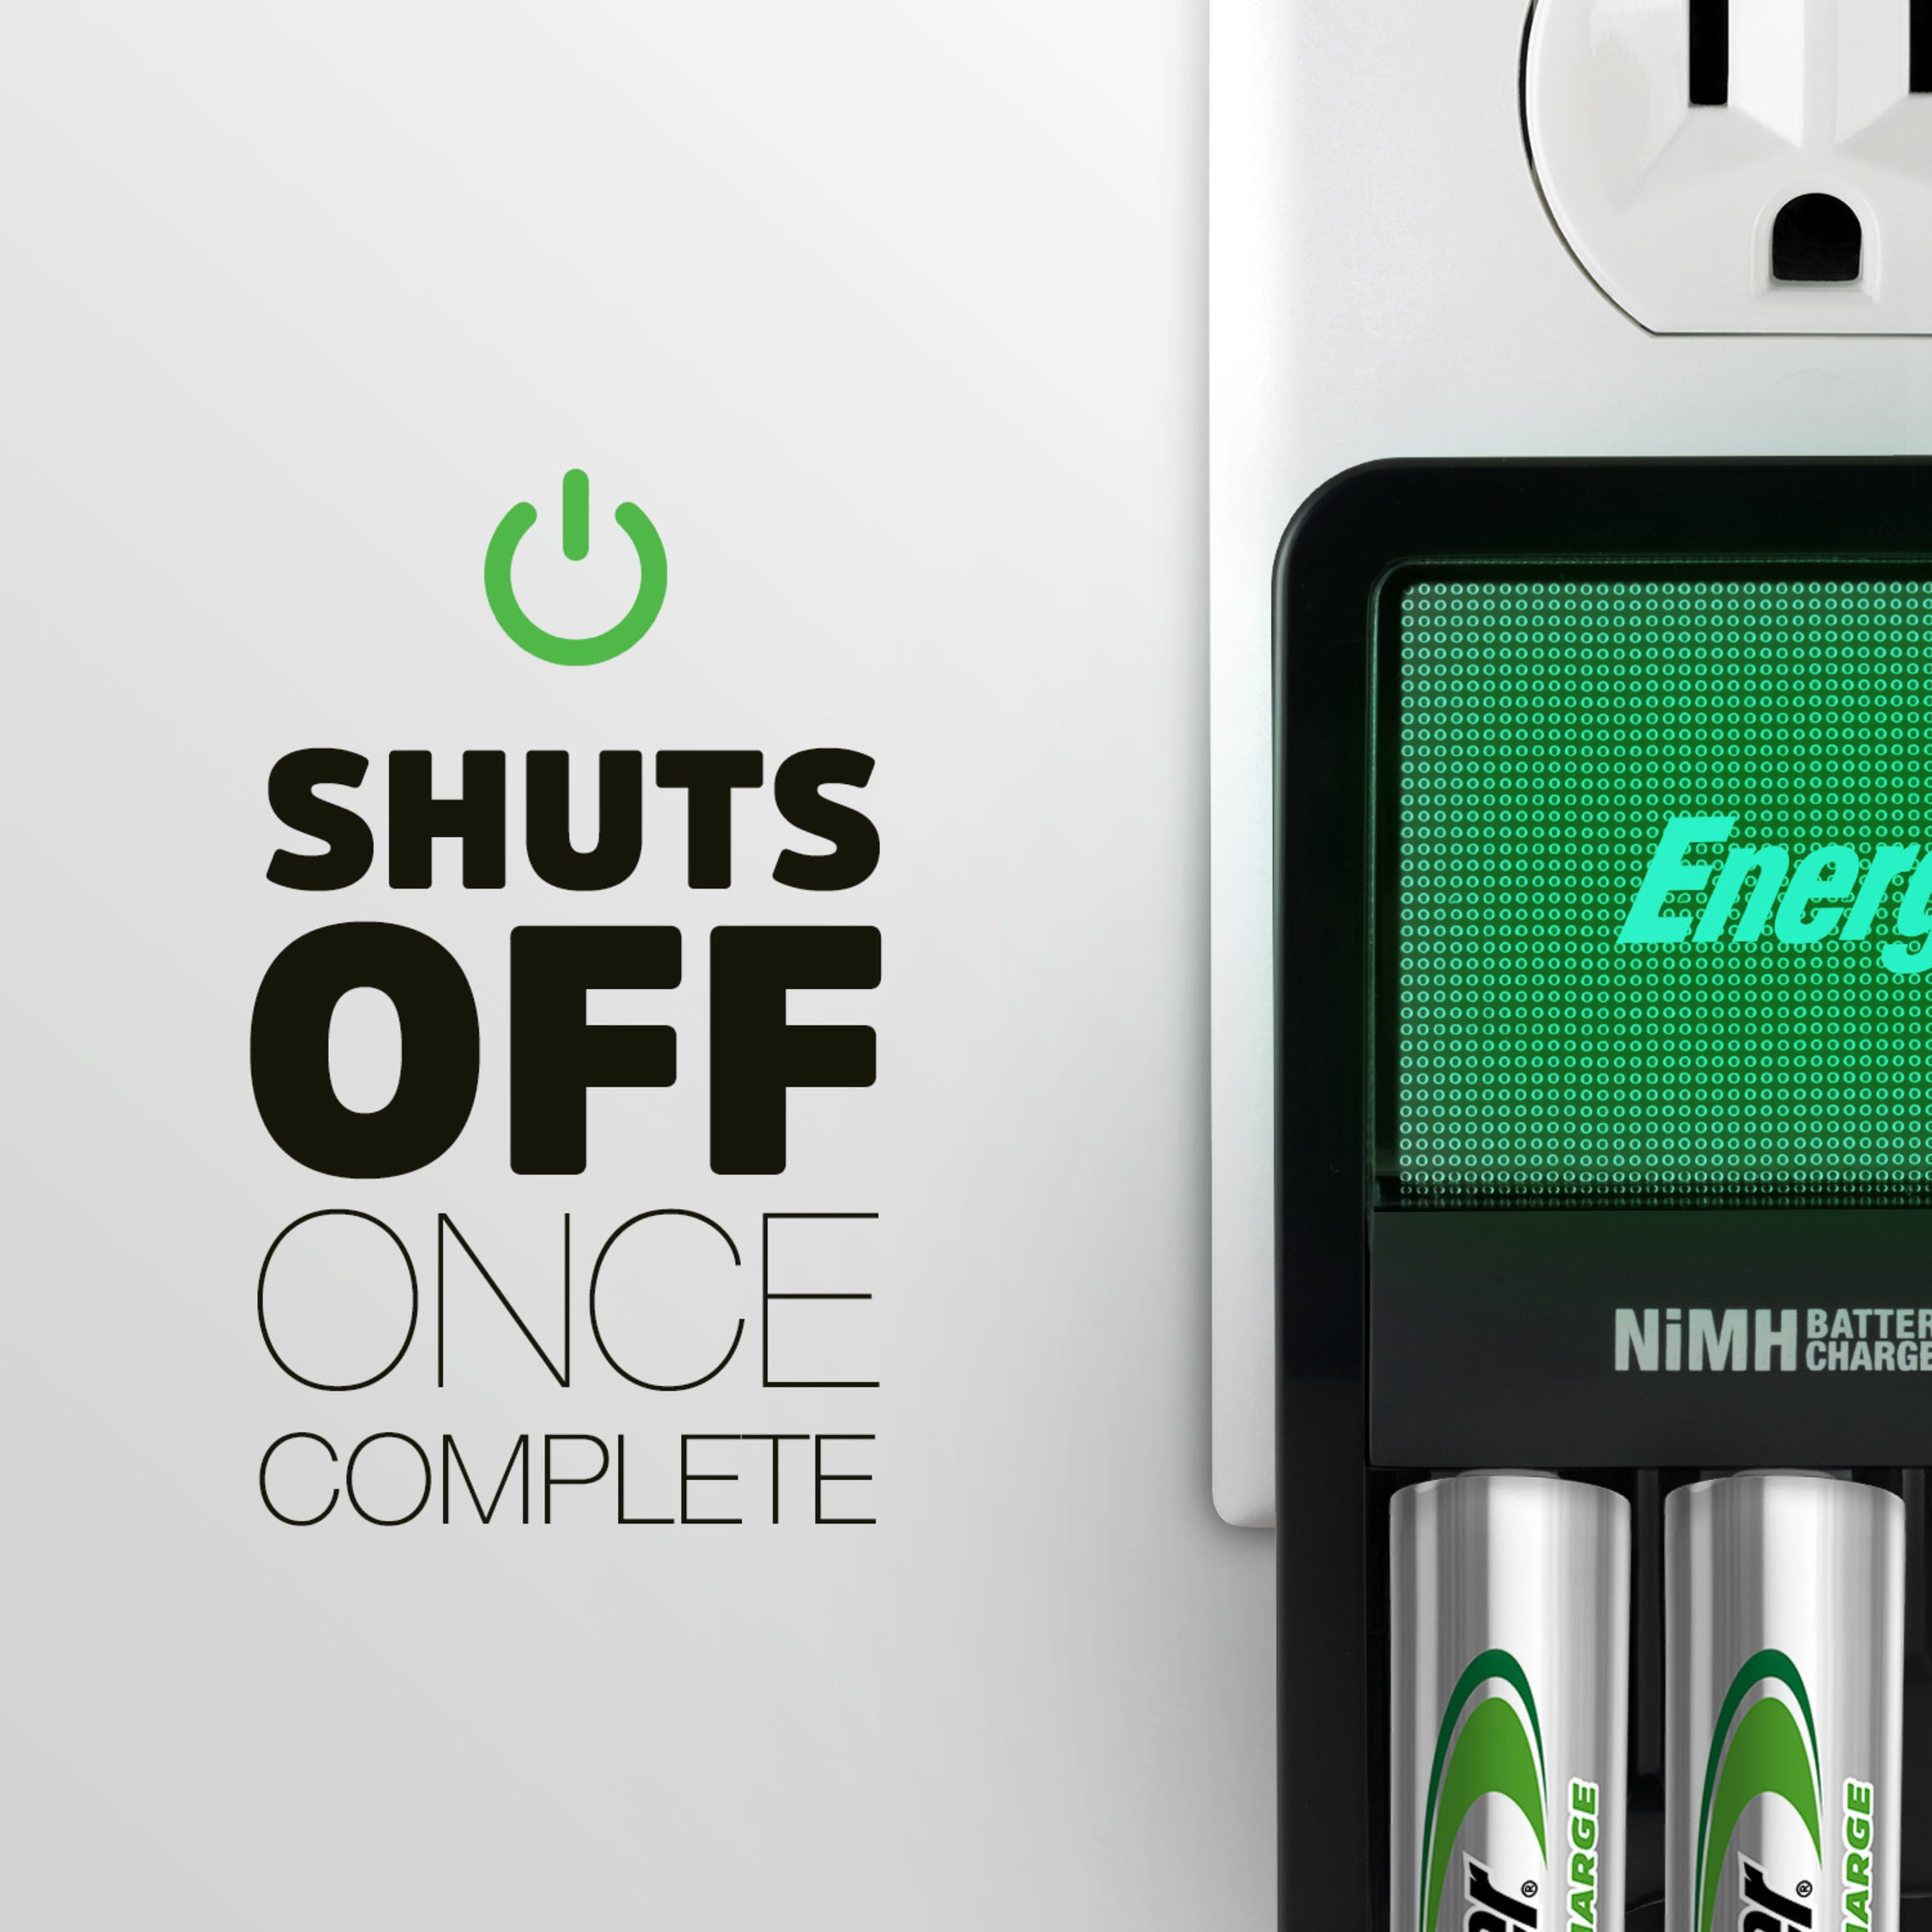 Chargeur Valeur Energizer Recharge pour piles rechargeables NiMH